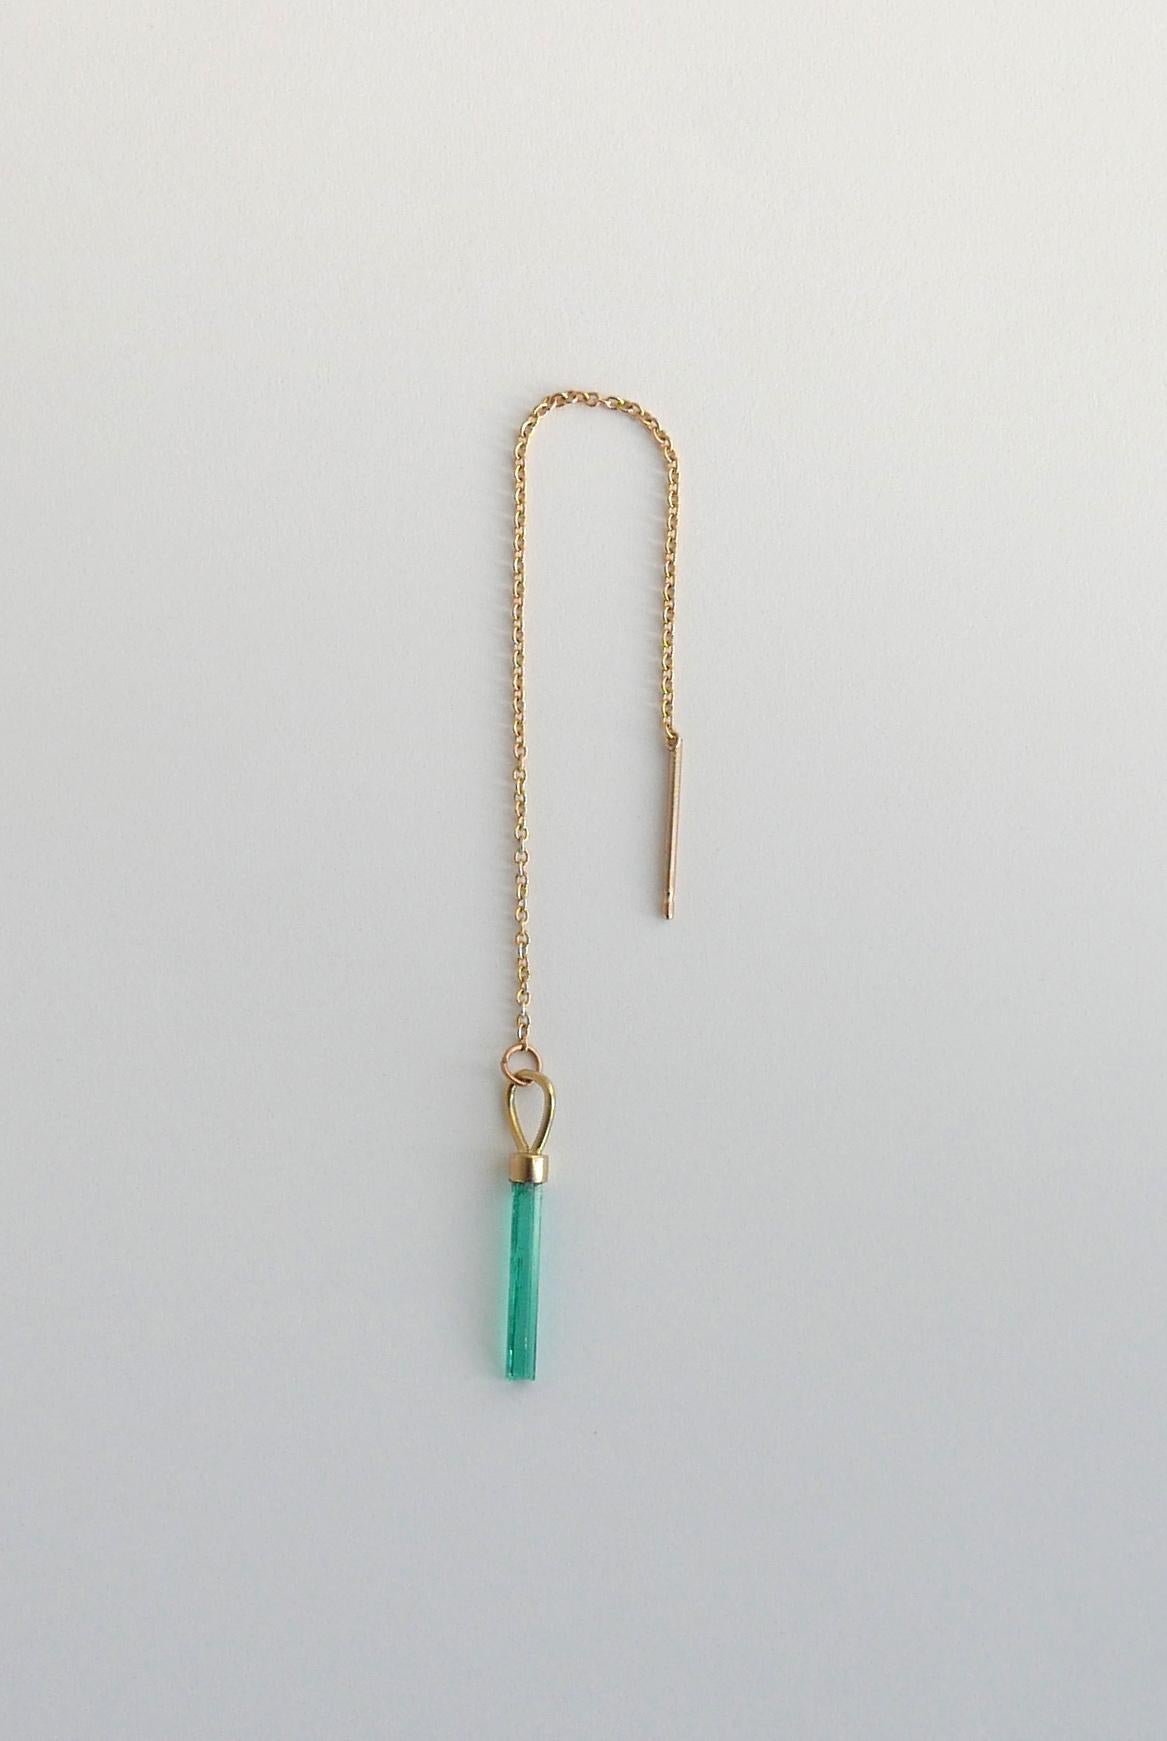 Dieser zeitgenössische Ohrring mit einer einzigen Kette zeigt einen natürlichen kolumbianischen Smaragd in Nadelform auf einer feinen 18-karätigen Goldkette mit Stiftrückseite.  Die Kette kann durch das Ohr gezeichnet werden, um die Länge zu